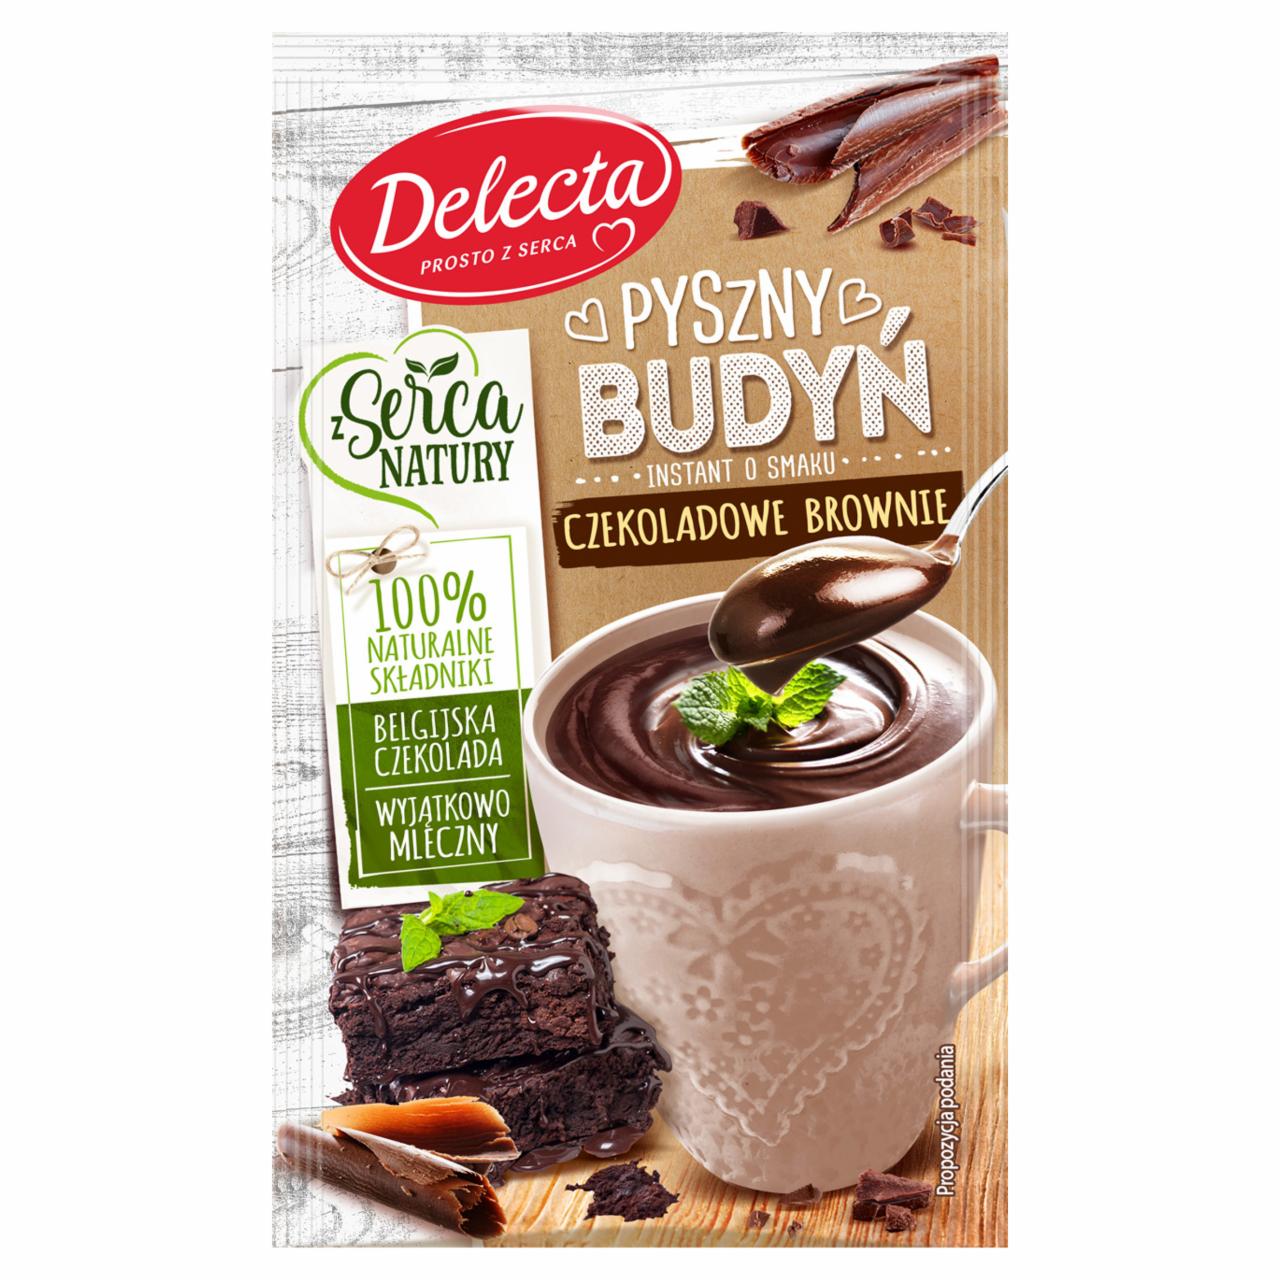 Zdjęcia - Delecta Pyszny budyń smak czekoladowe brownie 43 g